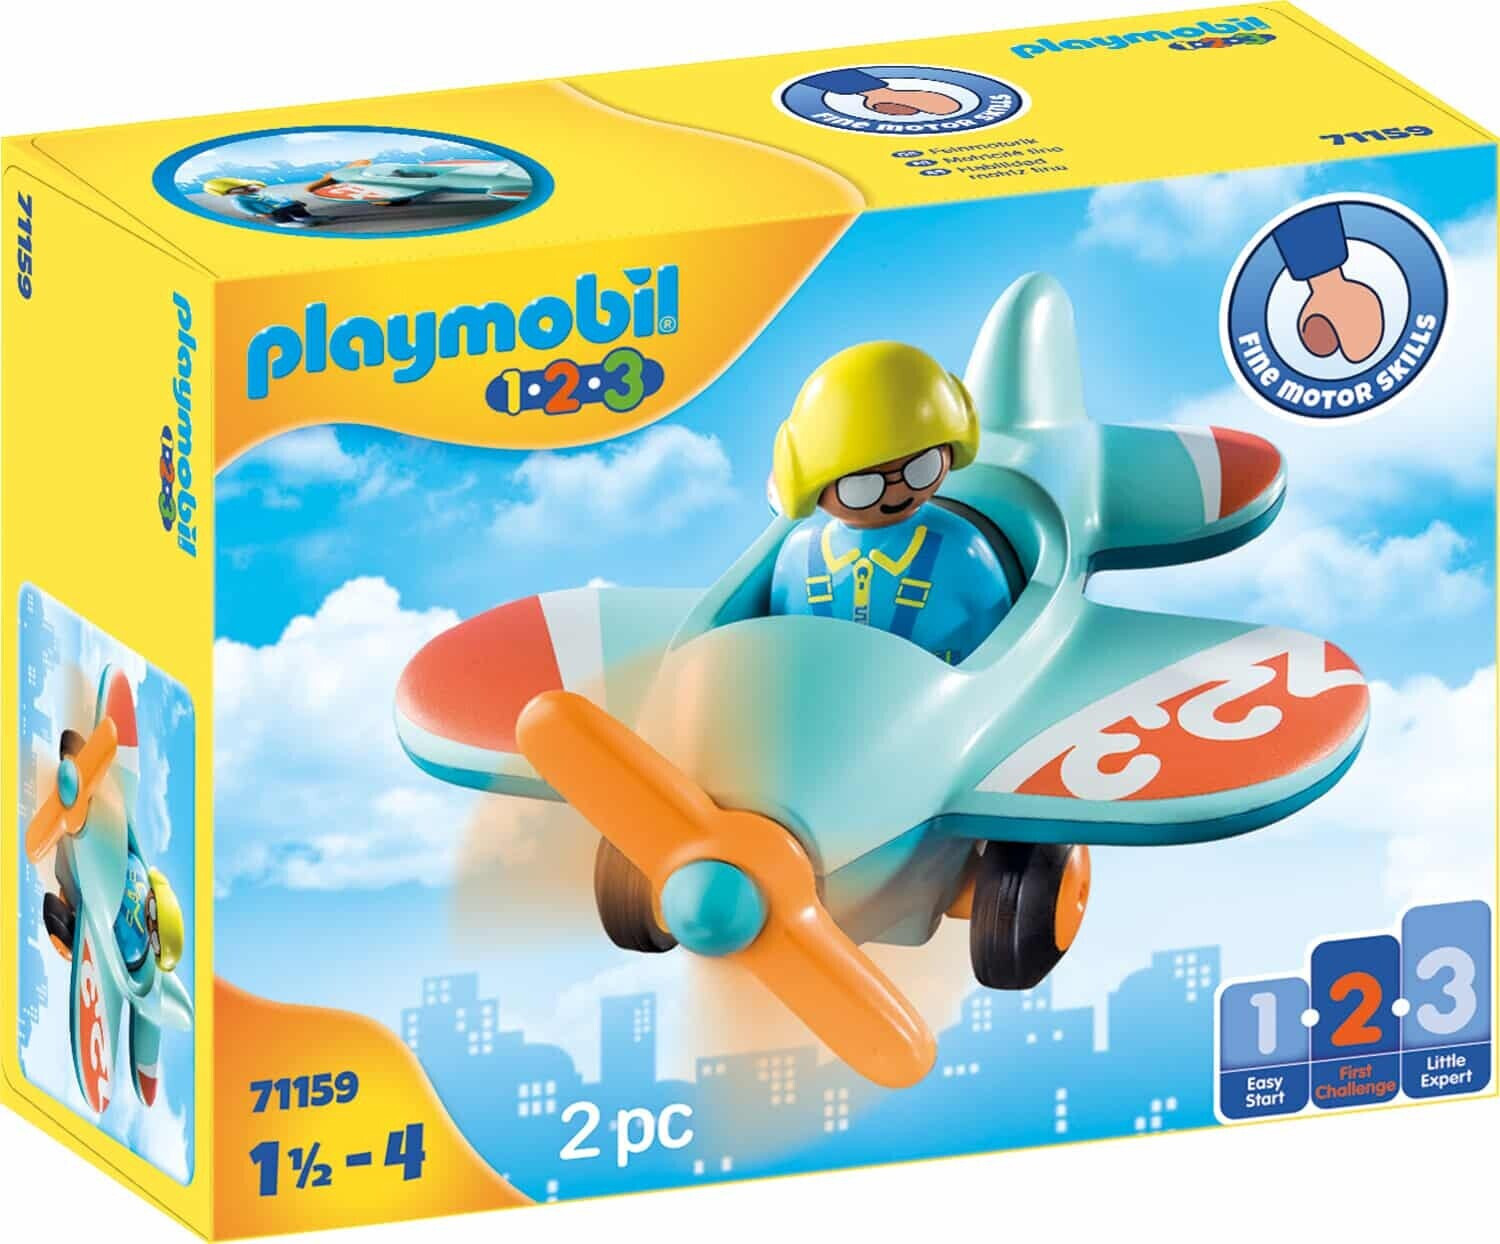 Playmobil Playmobil 1-2-3 - Playmobil 1-2-3 pour les 18 mois + à 1 an + !